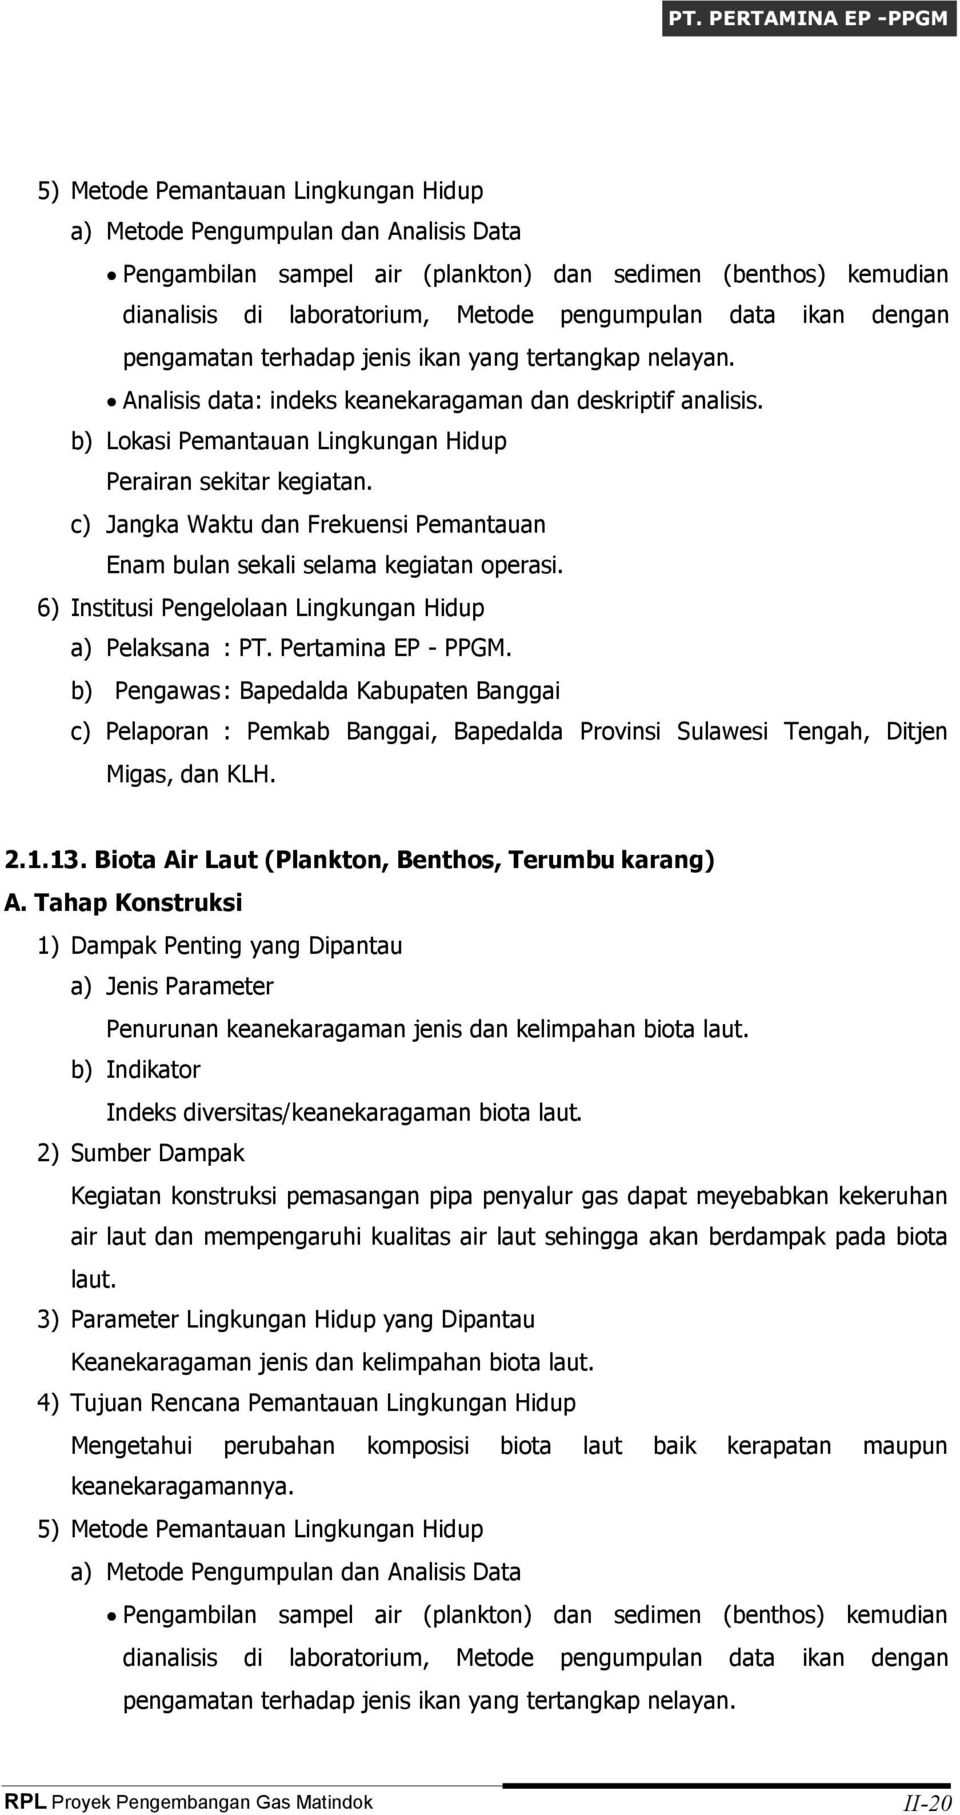 b) Pengawas: Bapedalda Kabupaten Banggai c) Pelaporan : Pemkab Banggai, Bapedalda Provinsi Sulawesi Tengah, Ditjen Migas, dan KLH. 2.1.13. Biota Air Laut (Plankton, Benthos, Terumbu karang) A.